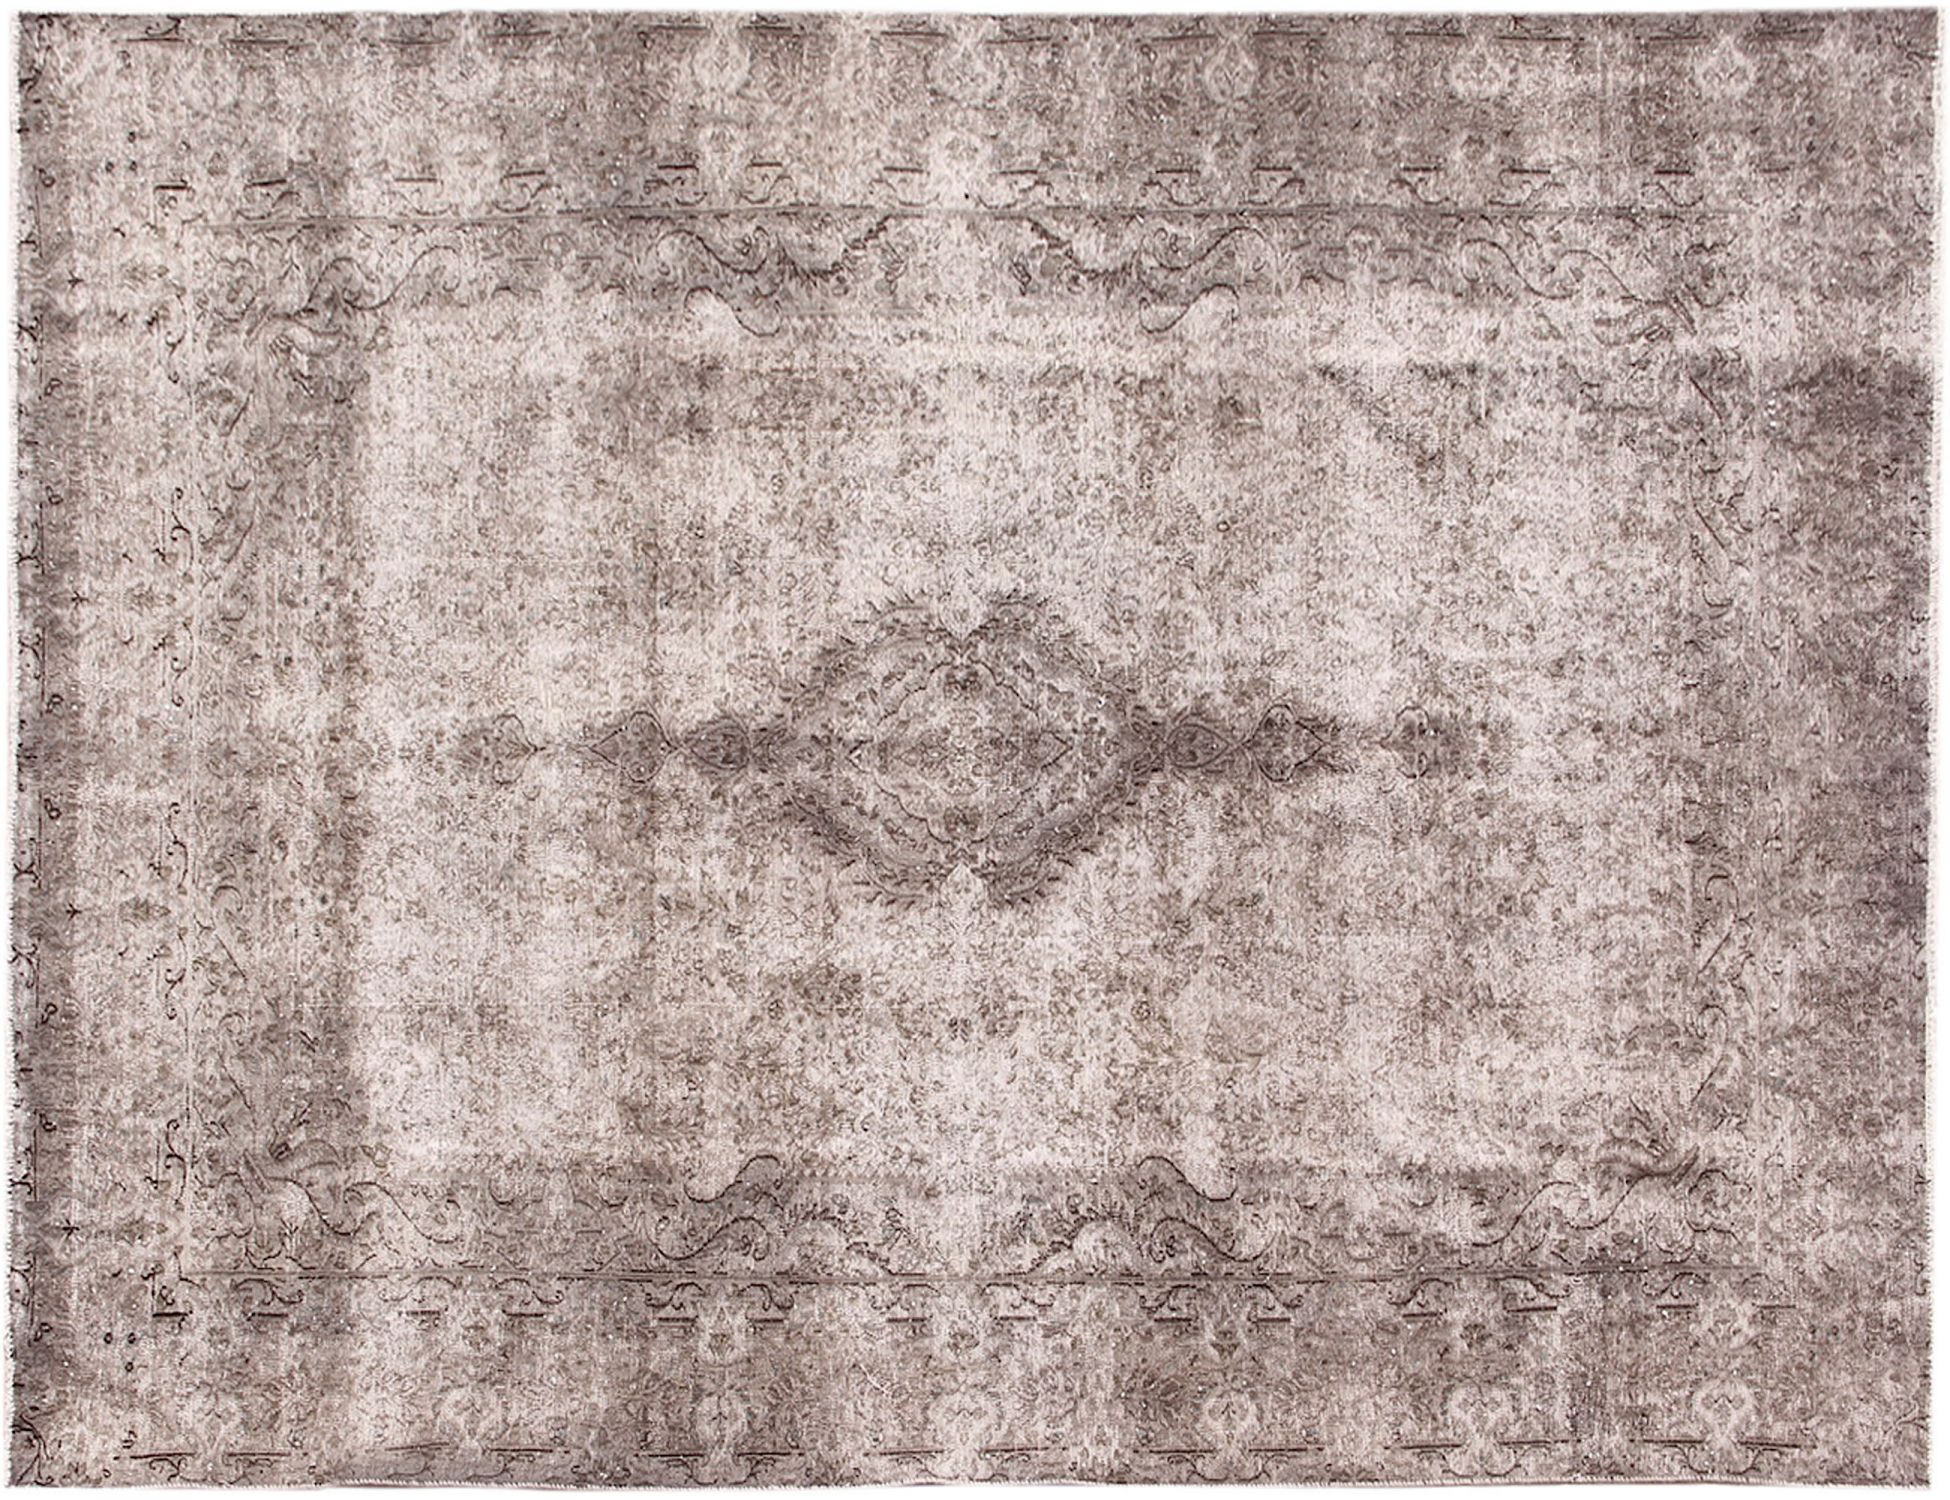 Persischer Vintage Teppich  grau <br/>310 x 233 cm